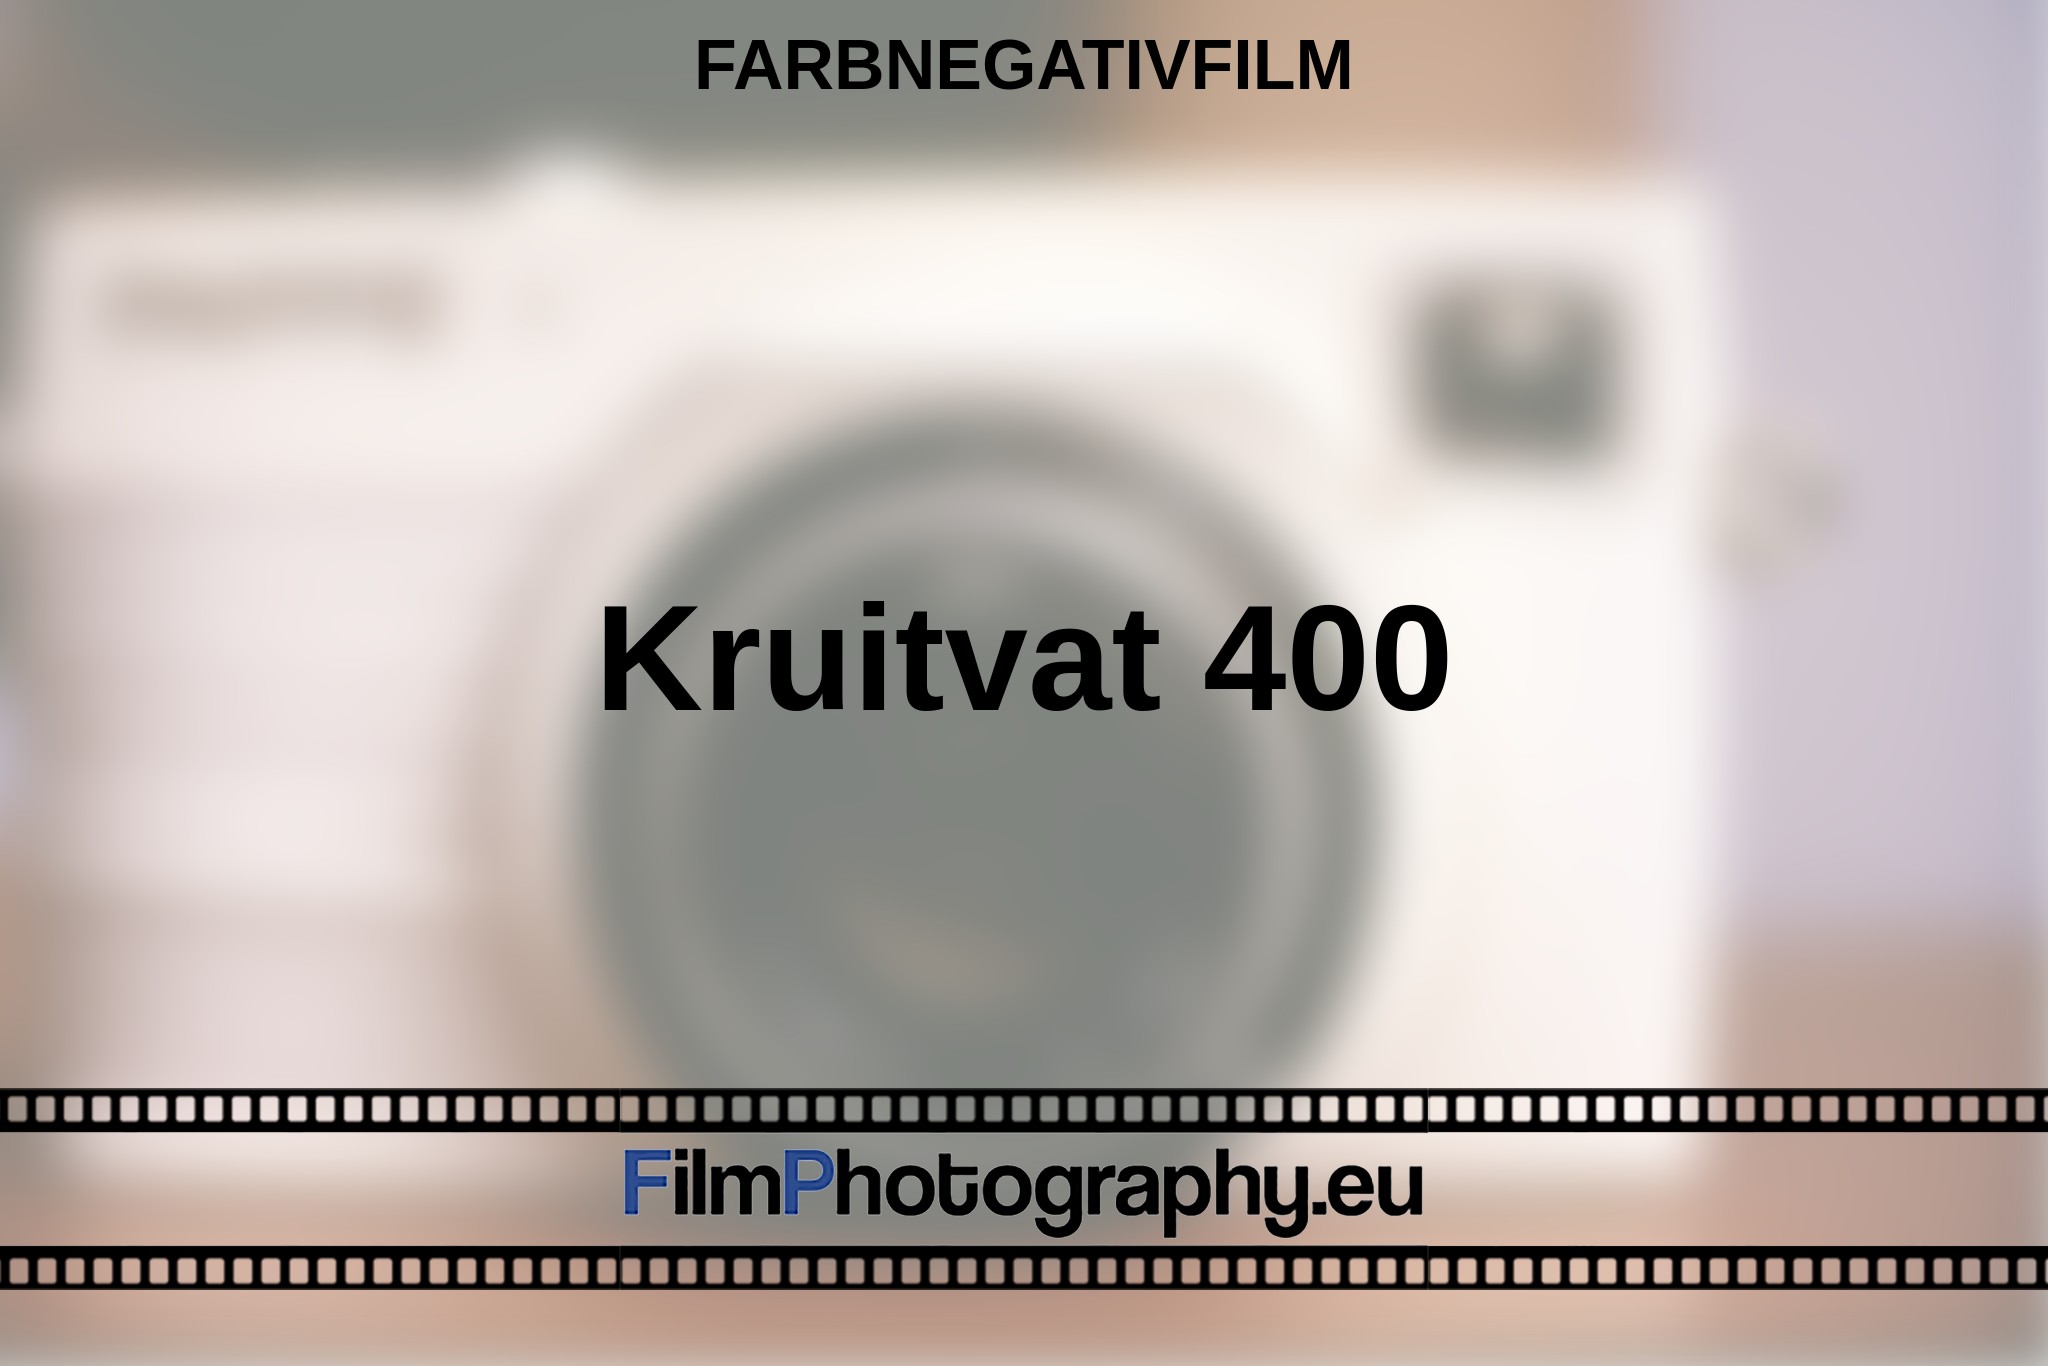 kruitvat-400-farbnegativfilm-bnv.jpg